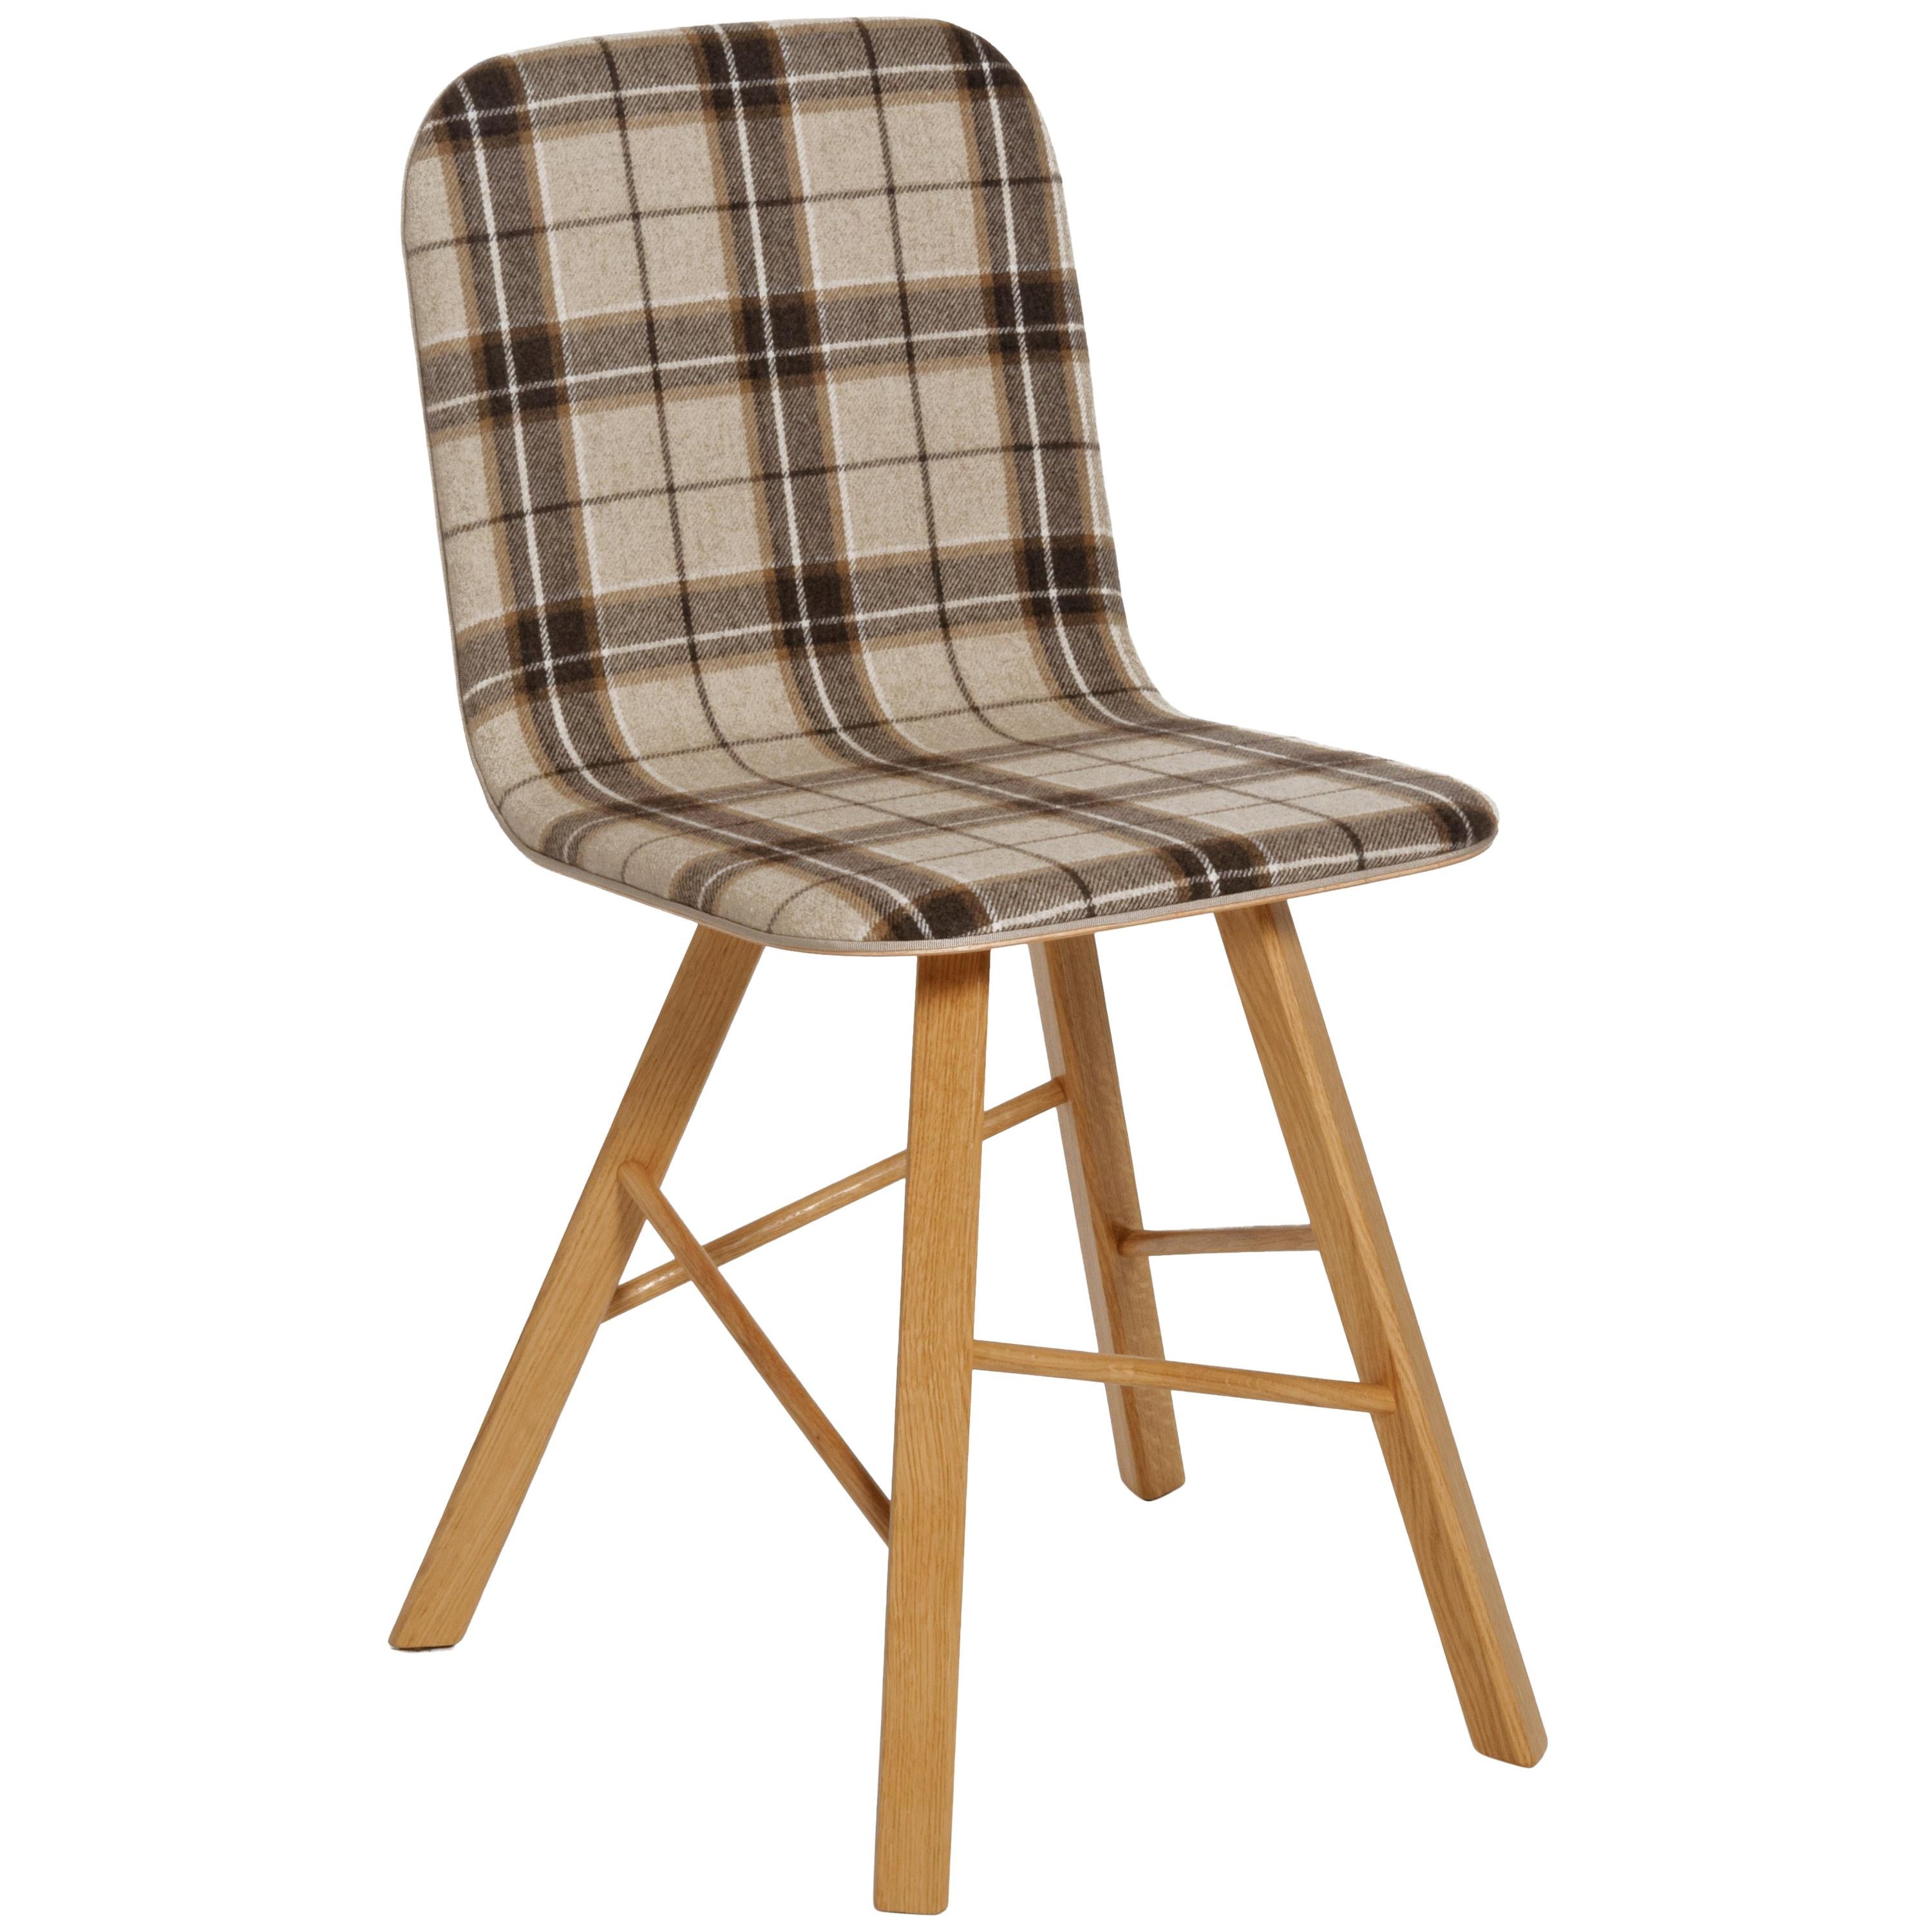 Chaise Tria simple avec pieds en chêne de Colé, assise en tartan beige, fabrication minimaliste en Italie